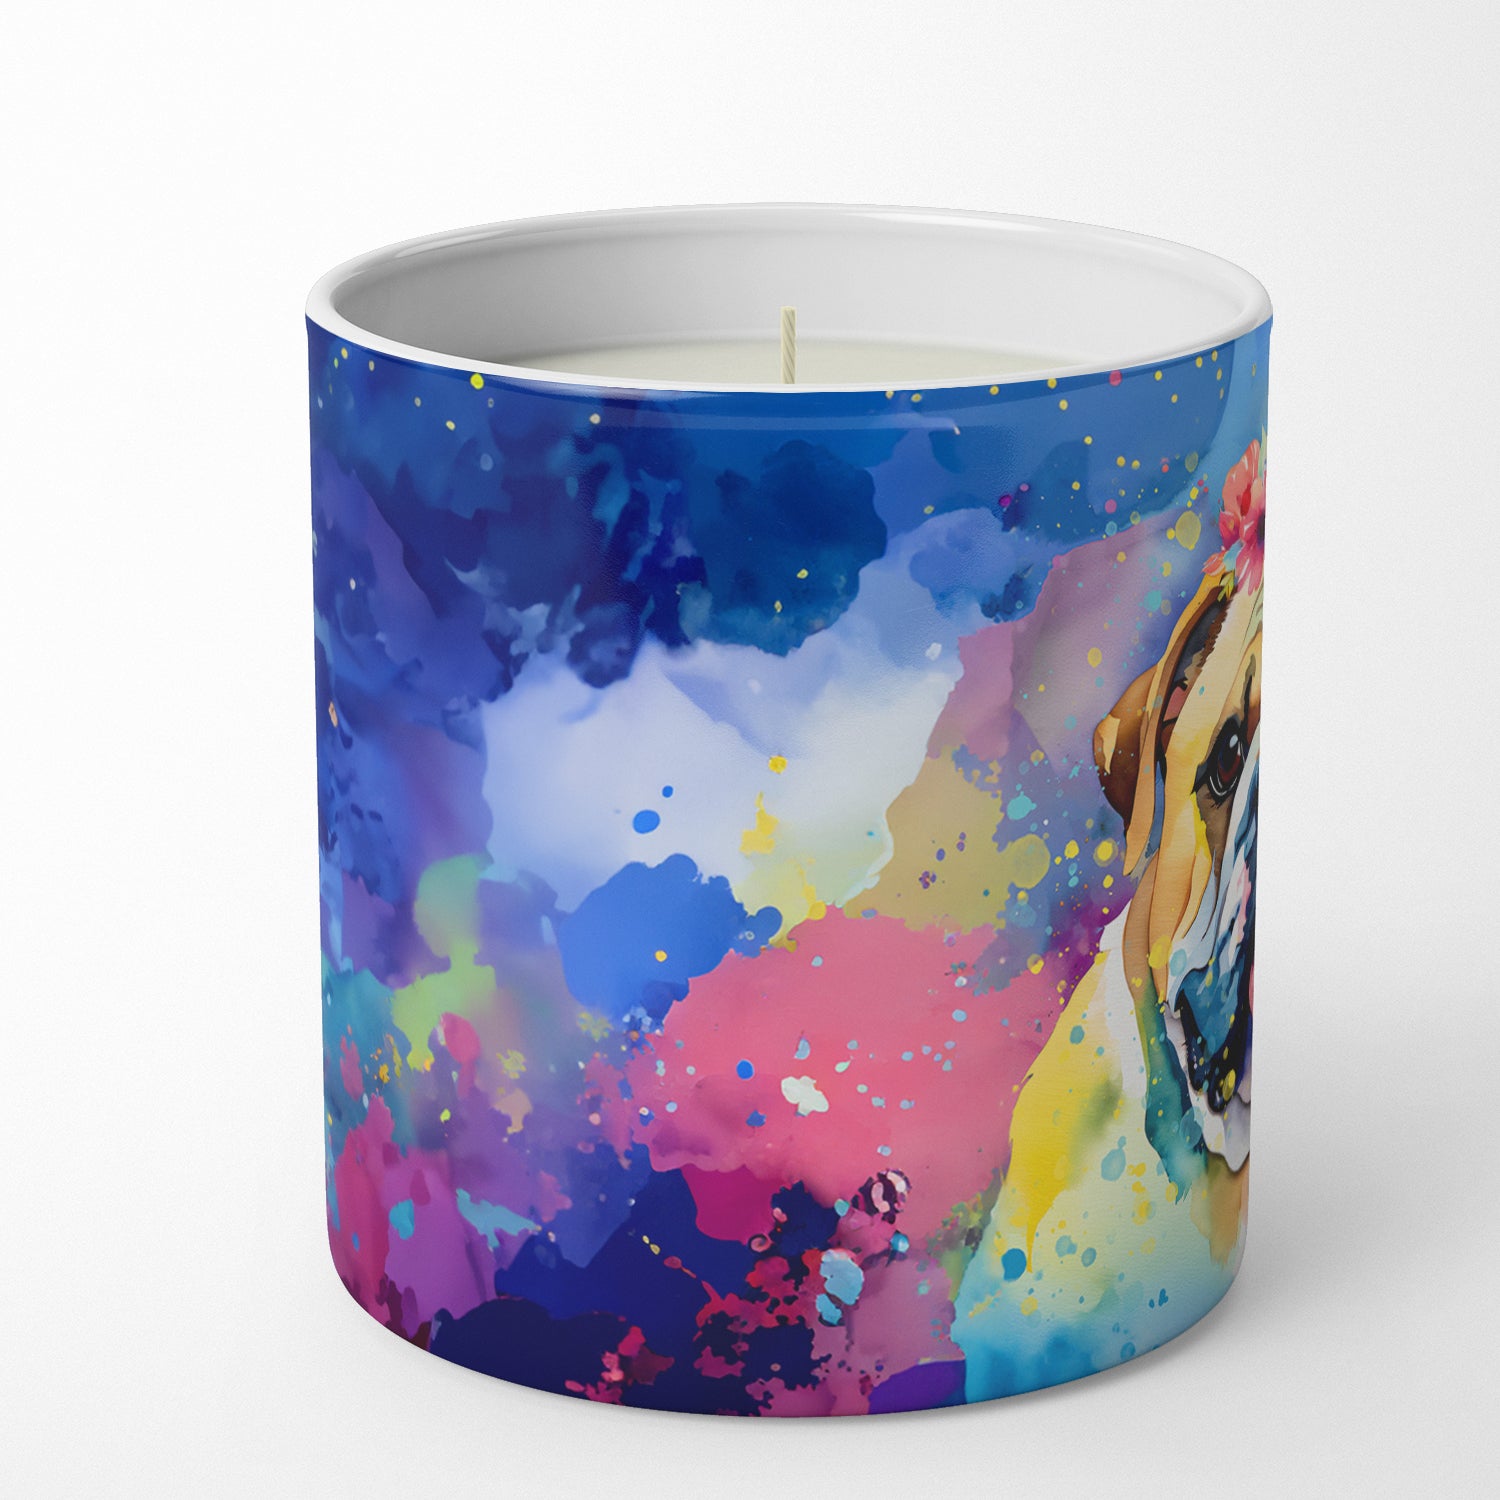 English Bulldog Hippie Dawg Decorative Soy Candle